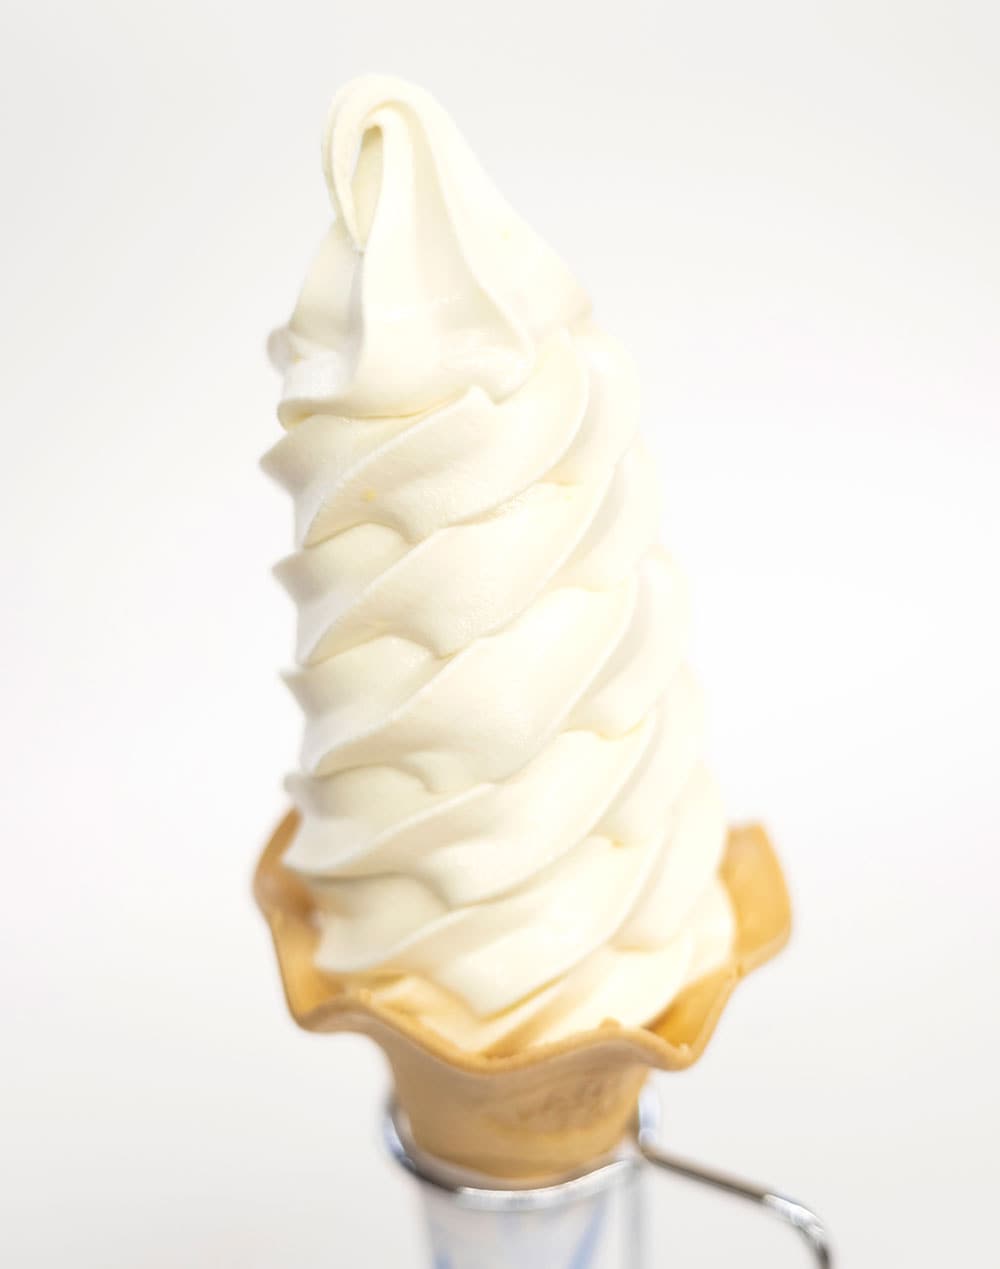 大人気の“ガンジーソフトクリーム”。きめが細かく、とてもまろやか。店外 350円、店内 360円。ヨーグルトをかけたタイプも人気だ。